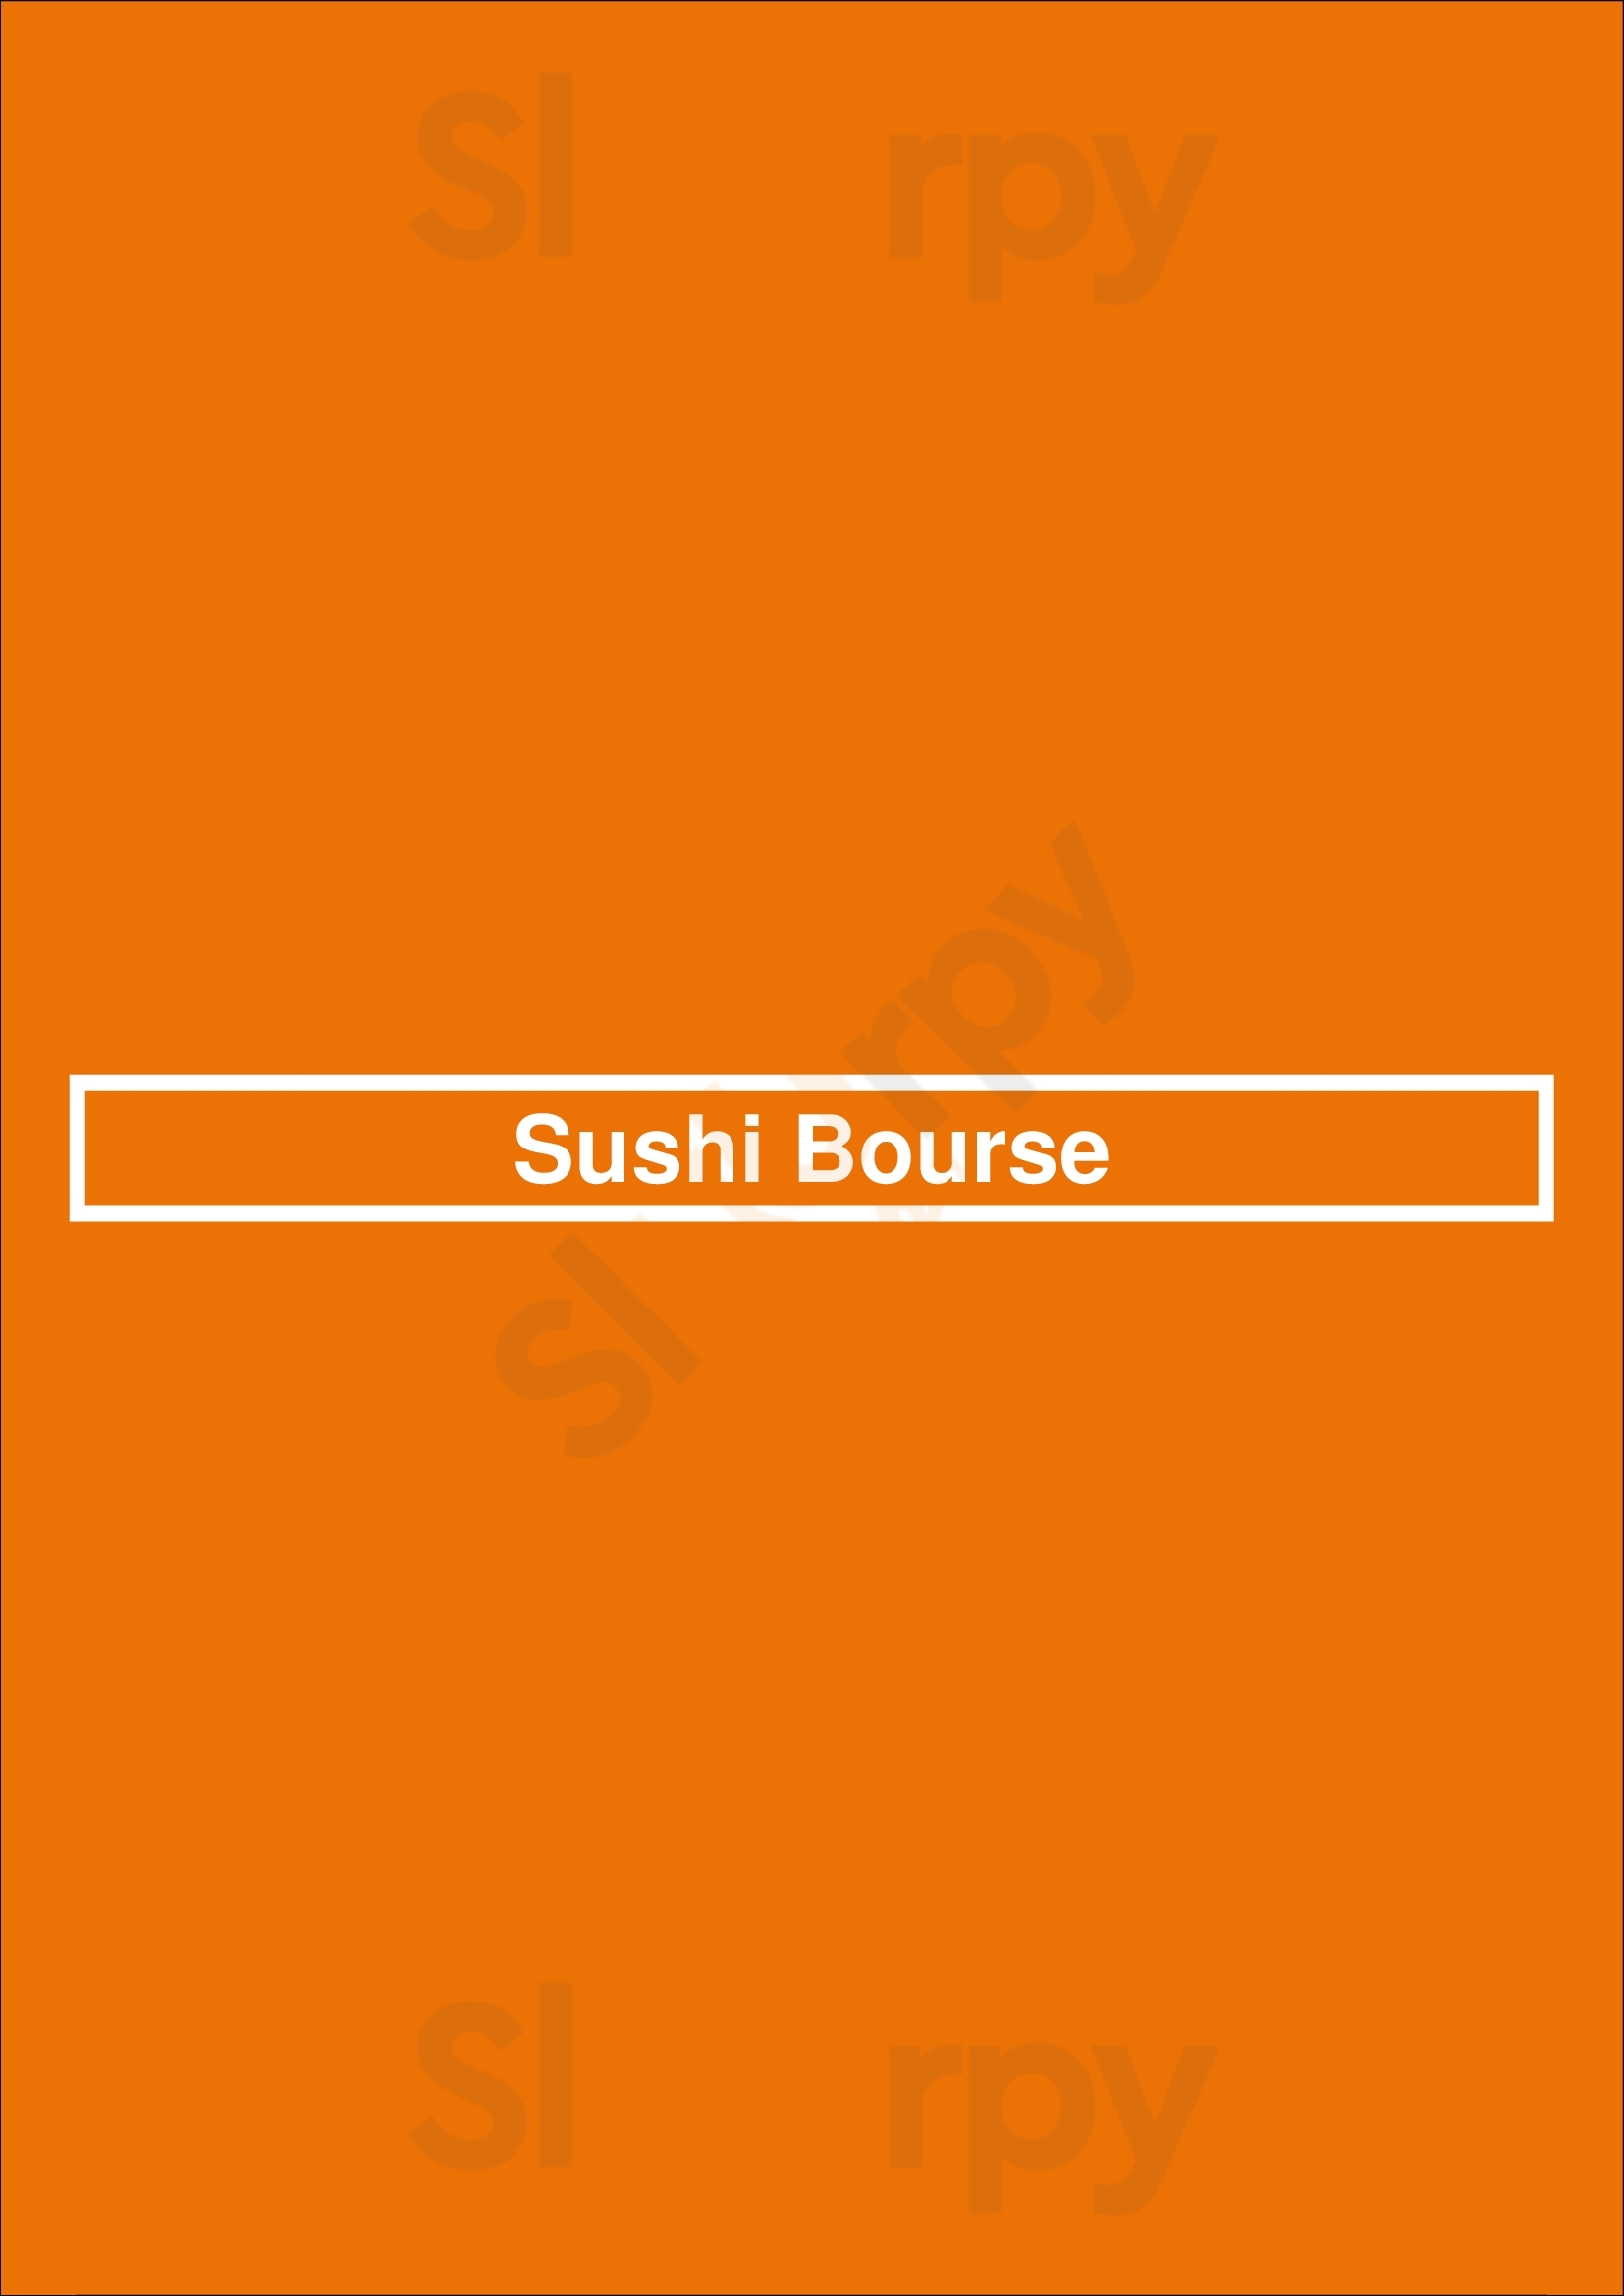 Sushi Bourse Bruxelles Menu - 1